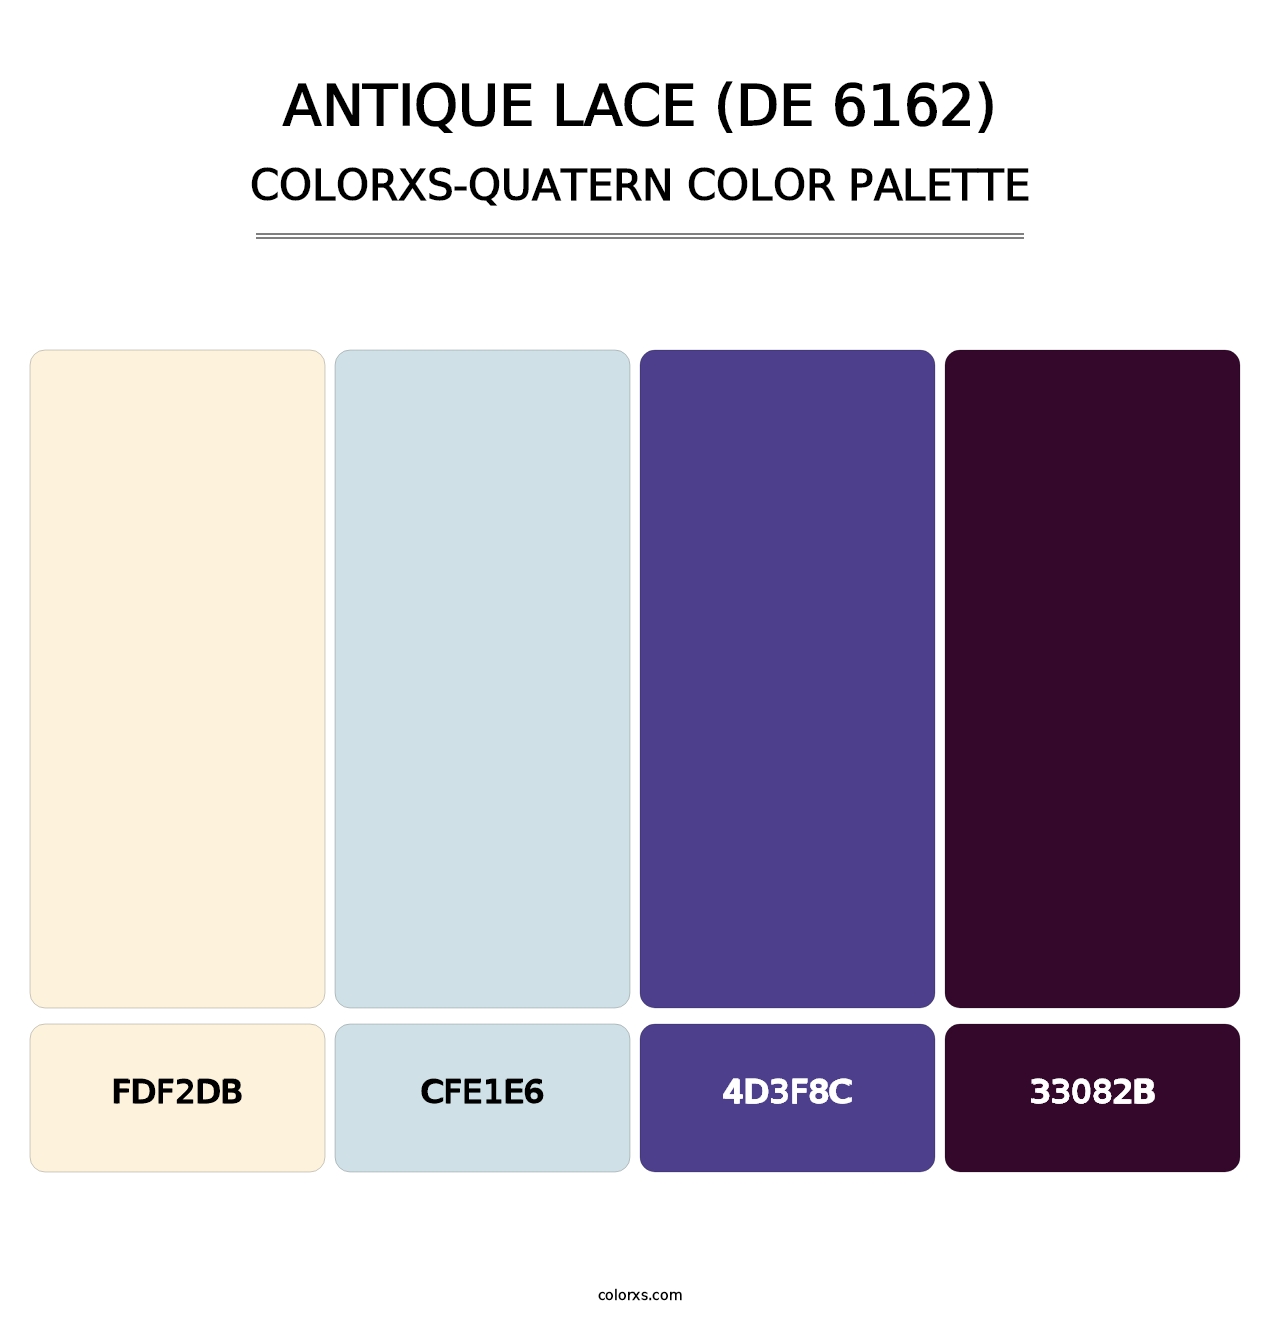 Antique Lace (DE 6162) - Colorxs Quatern Palette